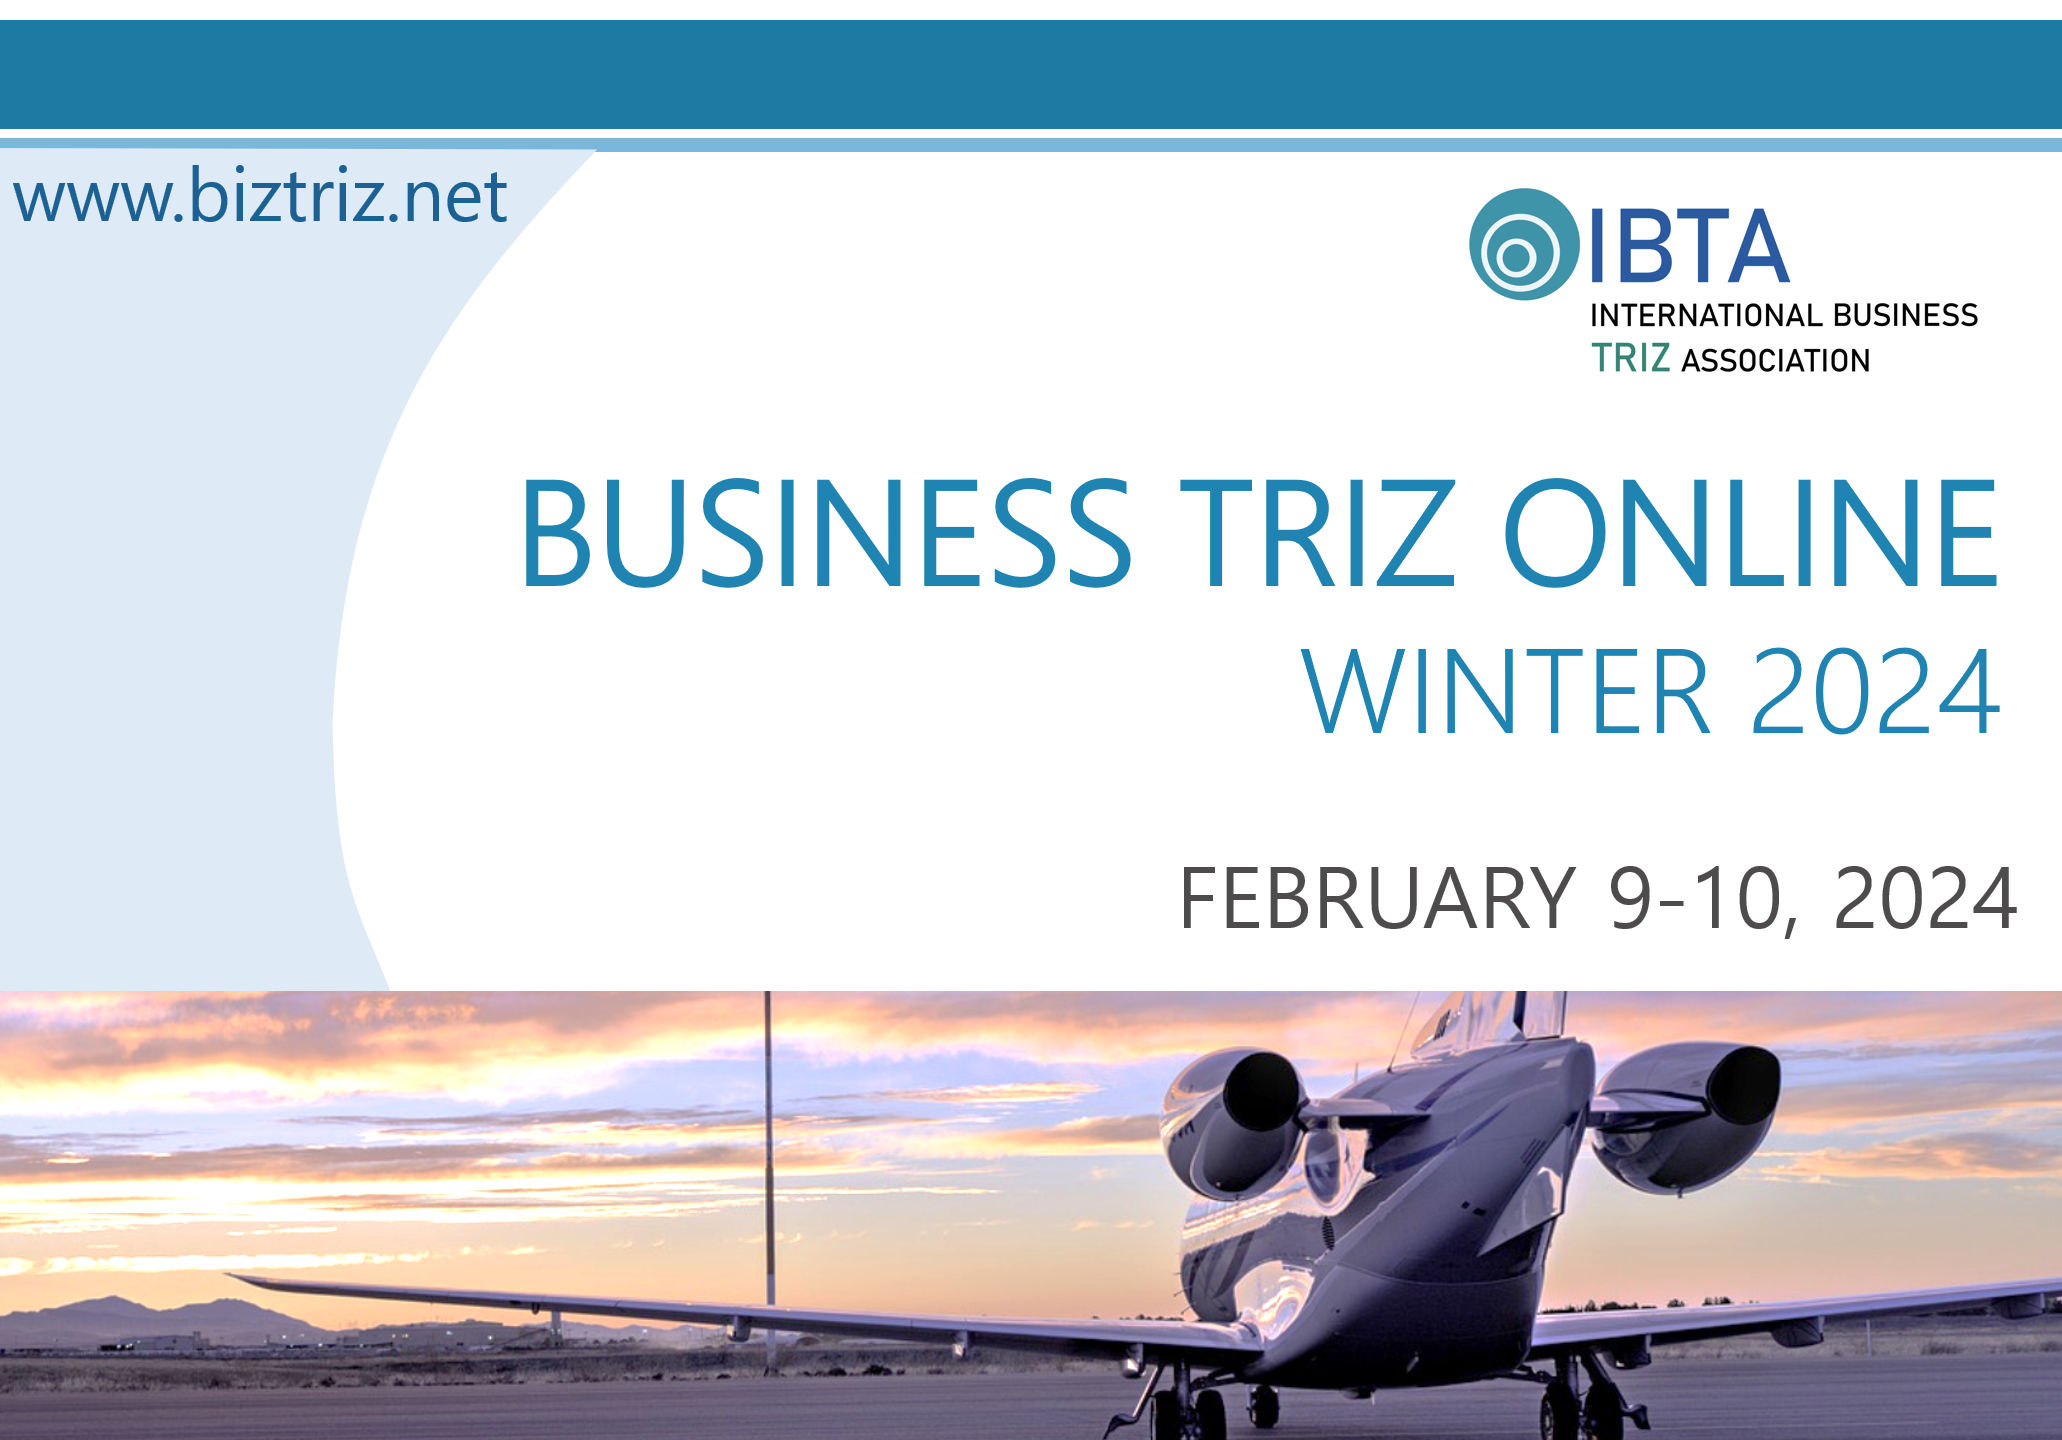 PowerPoint Slide Show IBTA Online Business TRIZ Winter 2024.pptx 17 05 2023 20 06 32